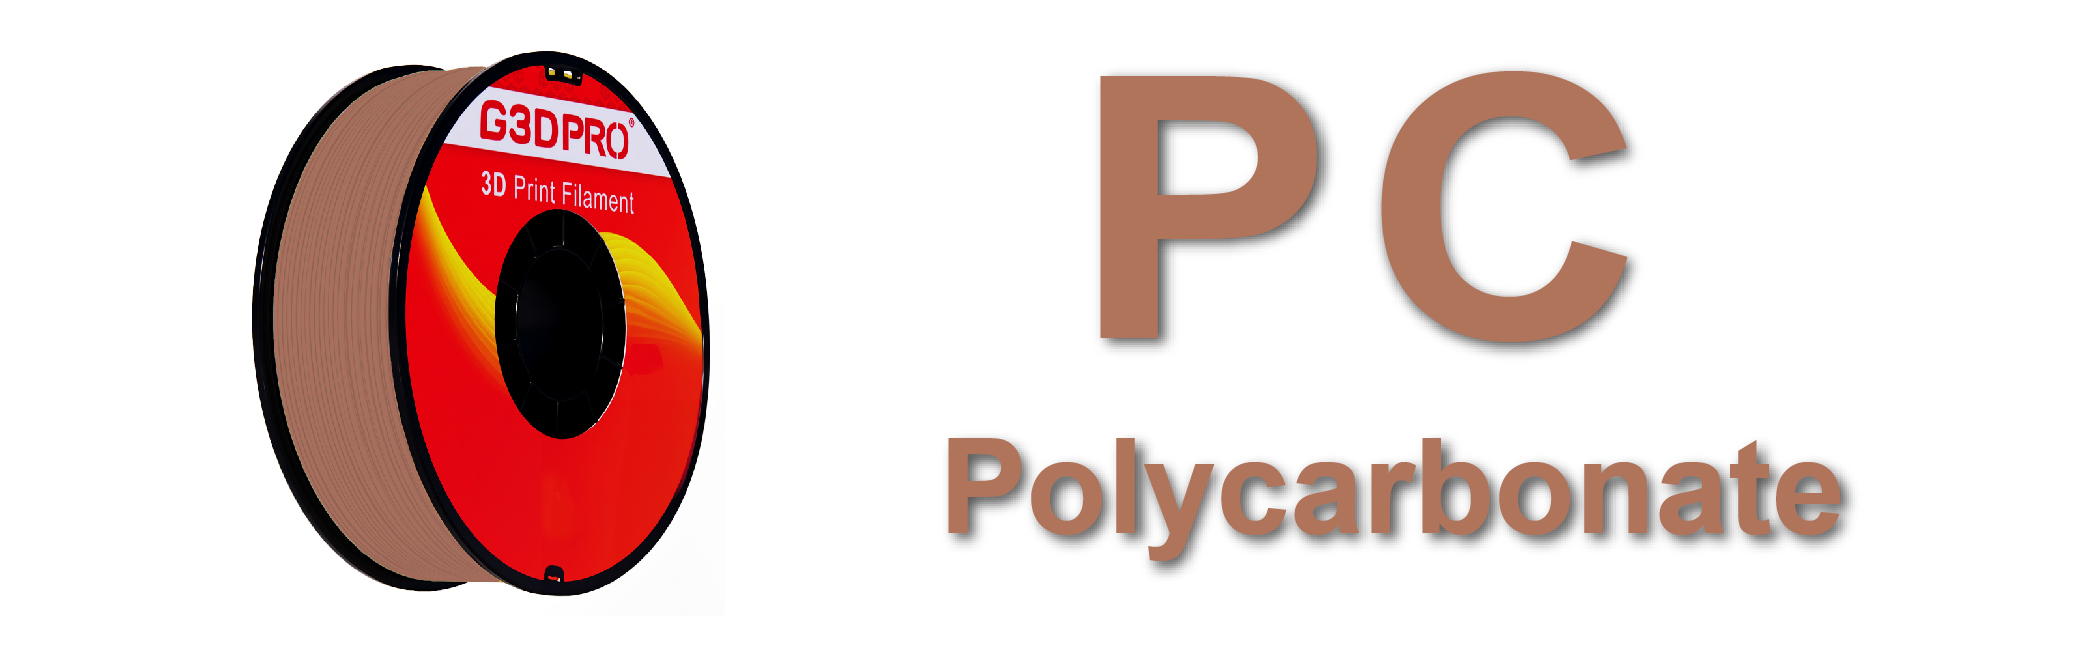 Le filament Polycarbonate G3D PRO® est un matériau thermoplastique de premier choix dans l'univers de l'impression 3D.  Le polycarbonate est un type de plastique qui est principalement fabriqué à partir de bisphénol A (BPA) et de phosgène. Le BPA est un composé organique dérivé du pétrole ou du gaz naturel, tandis que le phosgène est un composé chimique produit à partir de chlore et de monoxyde de carbone. Le processus de fabrication du polycarbonate implique généralement la réaction chimique entre le BPA et le phosgène, aboutissant à un polymère thermoplastique très résistant et transparent. Ce matériau est connu pour sa robustesse, sa résistance aux chocs et sa transparence, ce qui le rend idéal pour une variété d'applications, y compris dans le domaine de l'impression 3D où il est apprécié pour sa solidité et sa durabilité. Contrairement au PLA, qui est dérivé de ressources renouvelables, le polycarbonate est issu de la pétrochimie, reflétant sa nature synthétique et non biodégradable.Réputé pour sa robustesse exceptionnelle et sa résistance aux températures élevées, le polycarbonate est idéal pour des applications exigeant durabilité et stabilité thermique. Ce matériau est apprécié pour sa grande clarté optique, sa solidité et sa capacité à résister aux impacts, ce qui le rend parfait pour créer des pièces transparentes et résistantes. Bien qu'il nécessite des températures de fusion plus élevées que d'autres filaments comme le PLA, sa manipulation reste accessible avec les équipements d'impression 3D appropriés. Parmi les produits les plus populaires, on trouve le Polycarbonate G3D PRO® Transparent 1.75mm et le Polycarbonate G3D PRO® Blanc 1.75mm, qui sont tous deux choisis pour leur finition de haute qualité et leur fiabilité dans des conditions d'utilisation exigeantes.